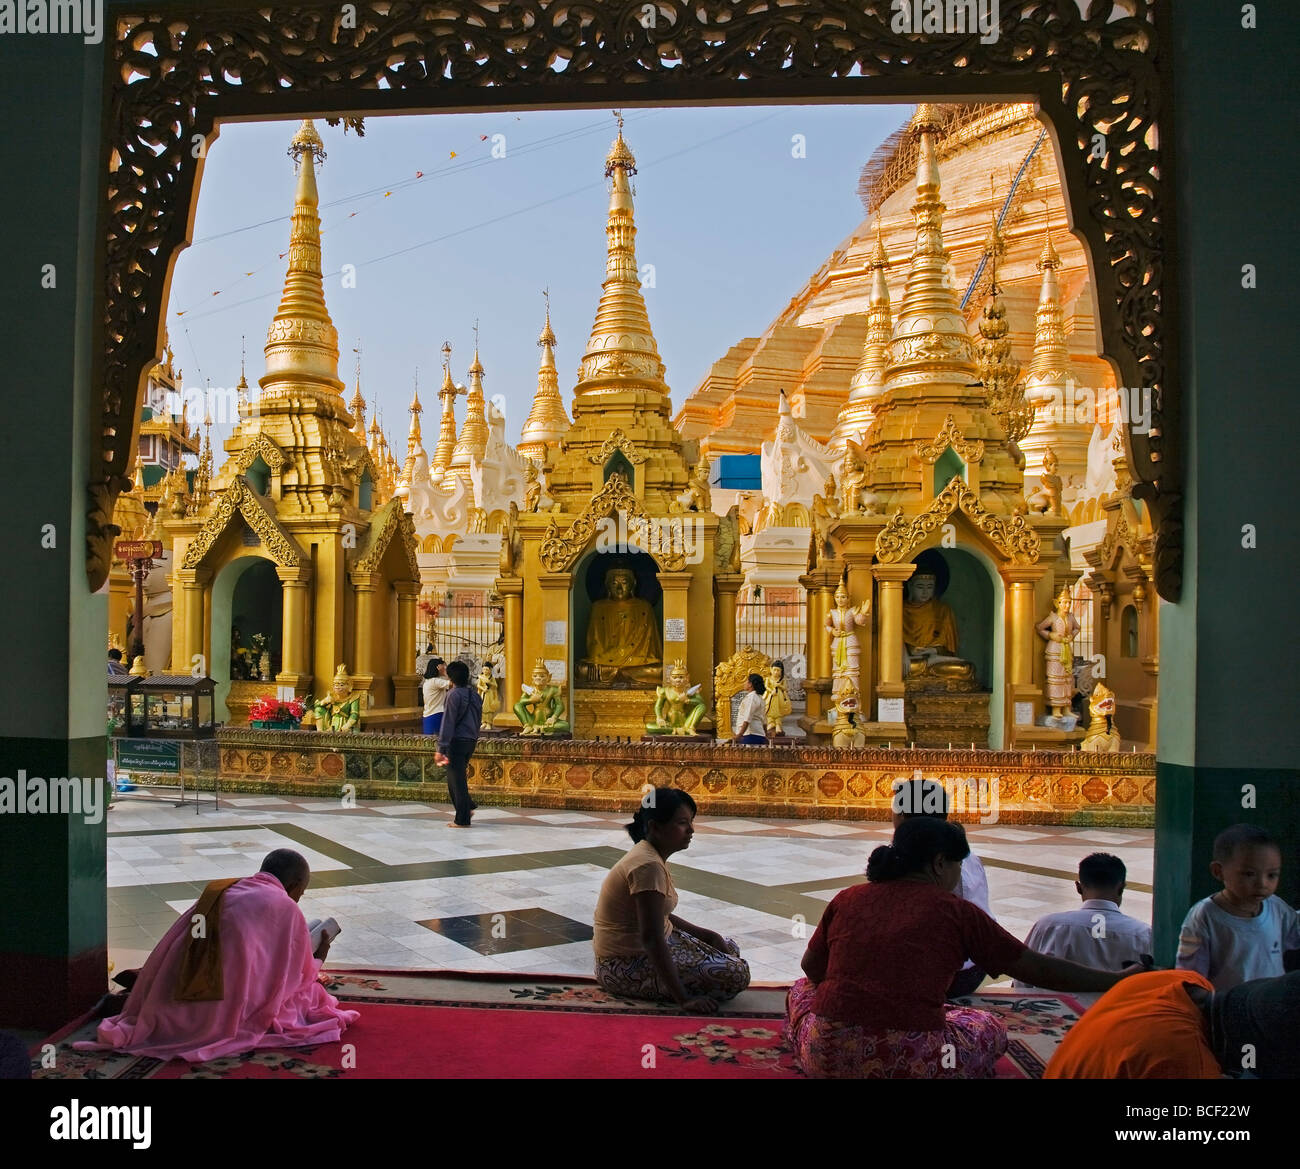 Le Myanmar, Birmanie, Yangon. Les Bouddhistes fervents prient à l'petits stupas, temples, sanctuaires au Temple d'or de la pagode Shwedagon. Banque D'Images